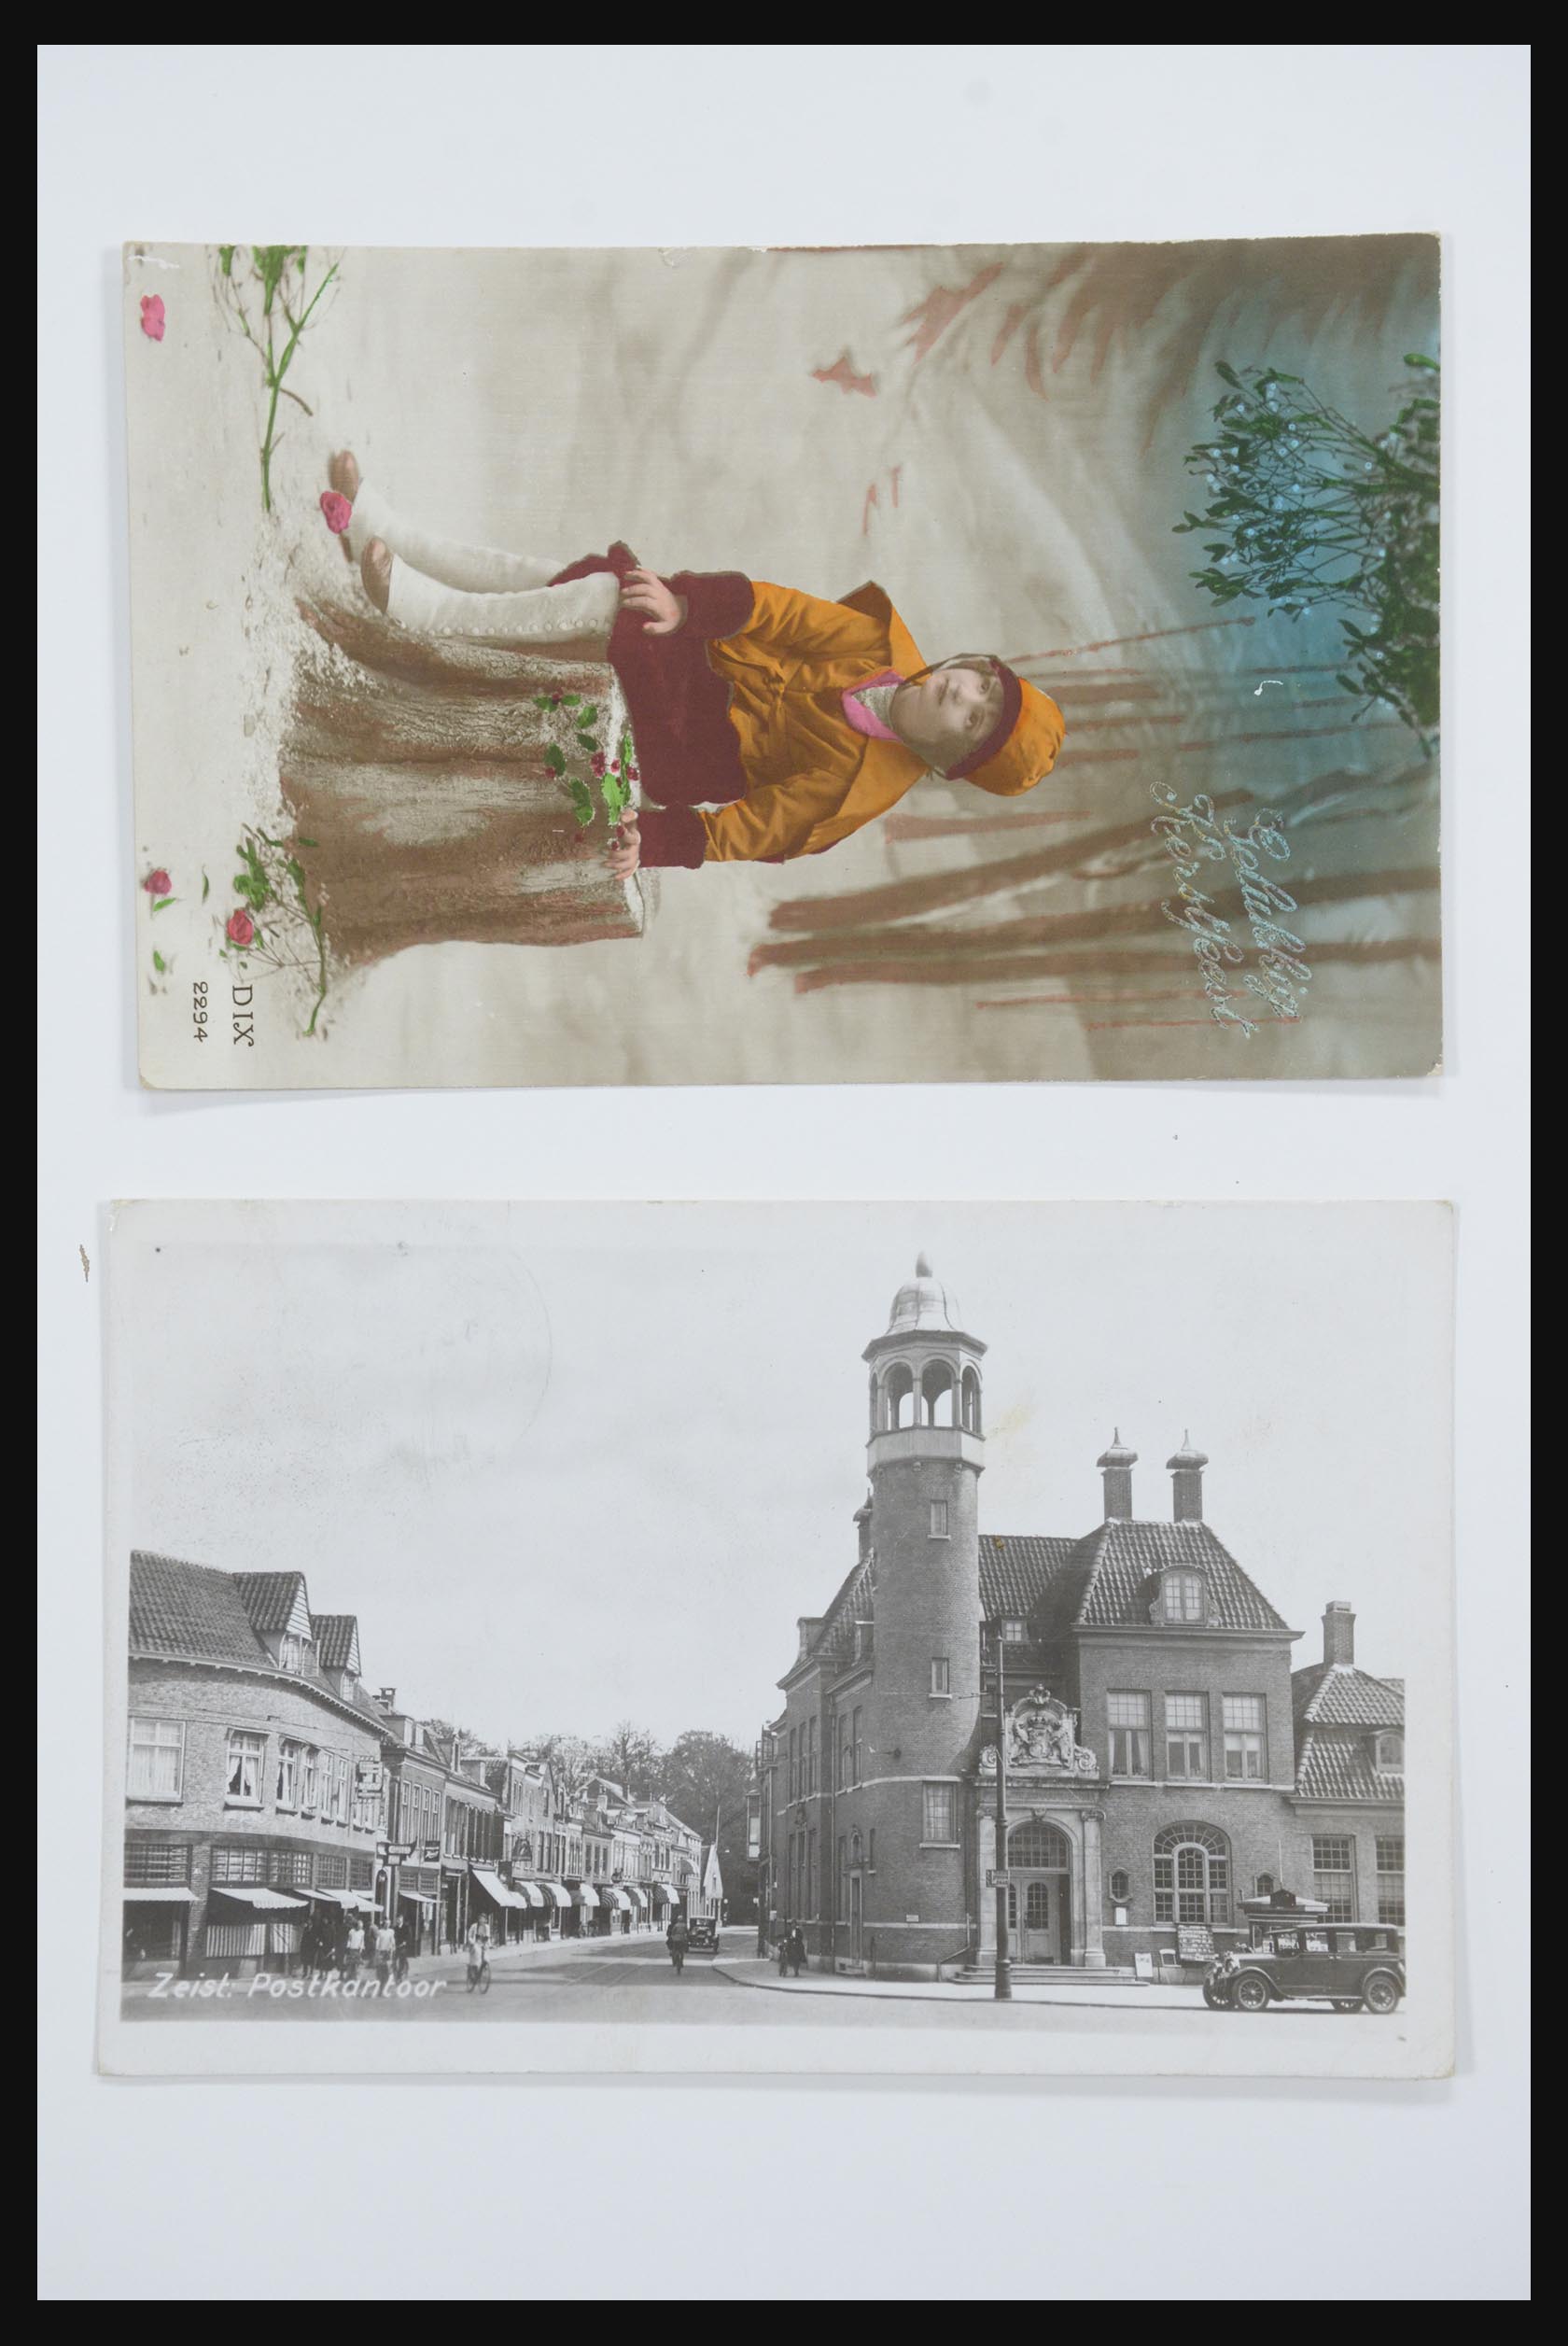 31668 028 - 31668 Nederland ansichtkaarten 1905-1935.